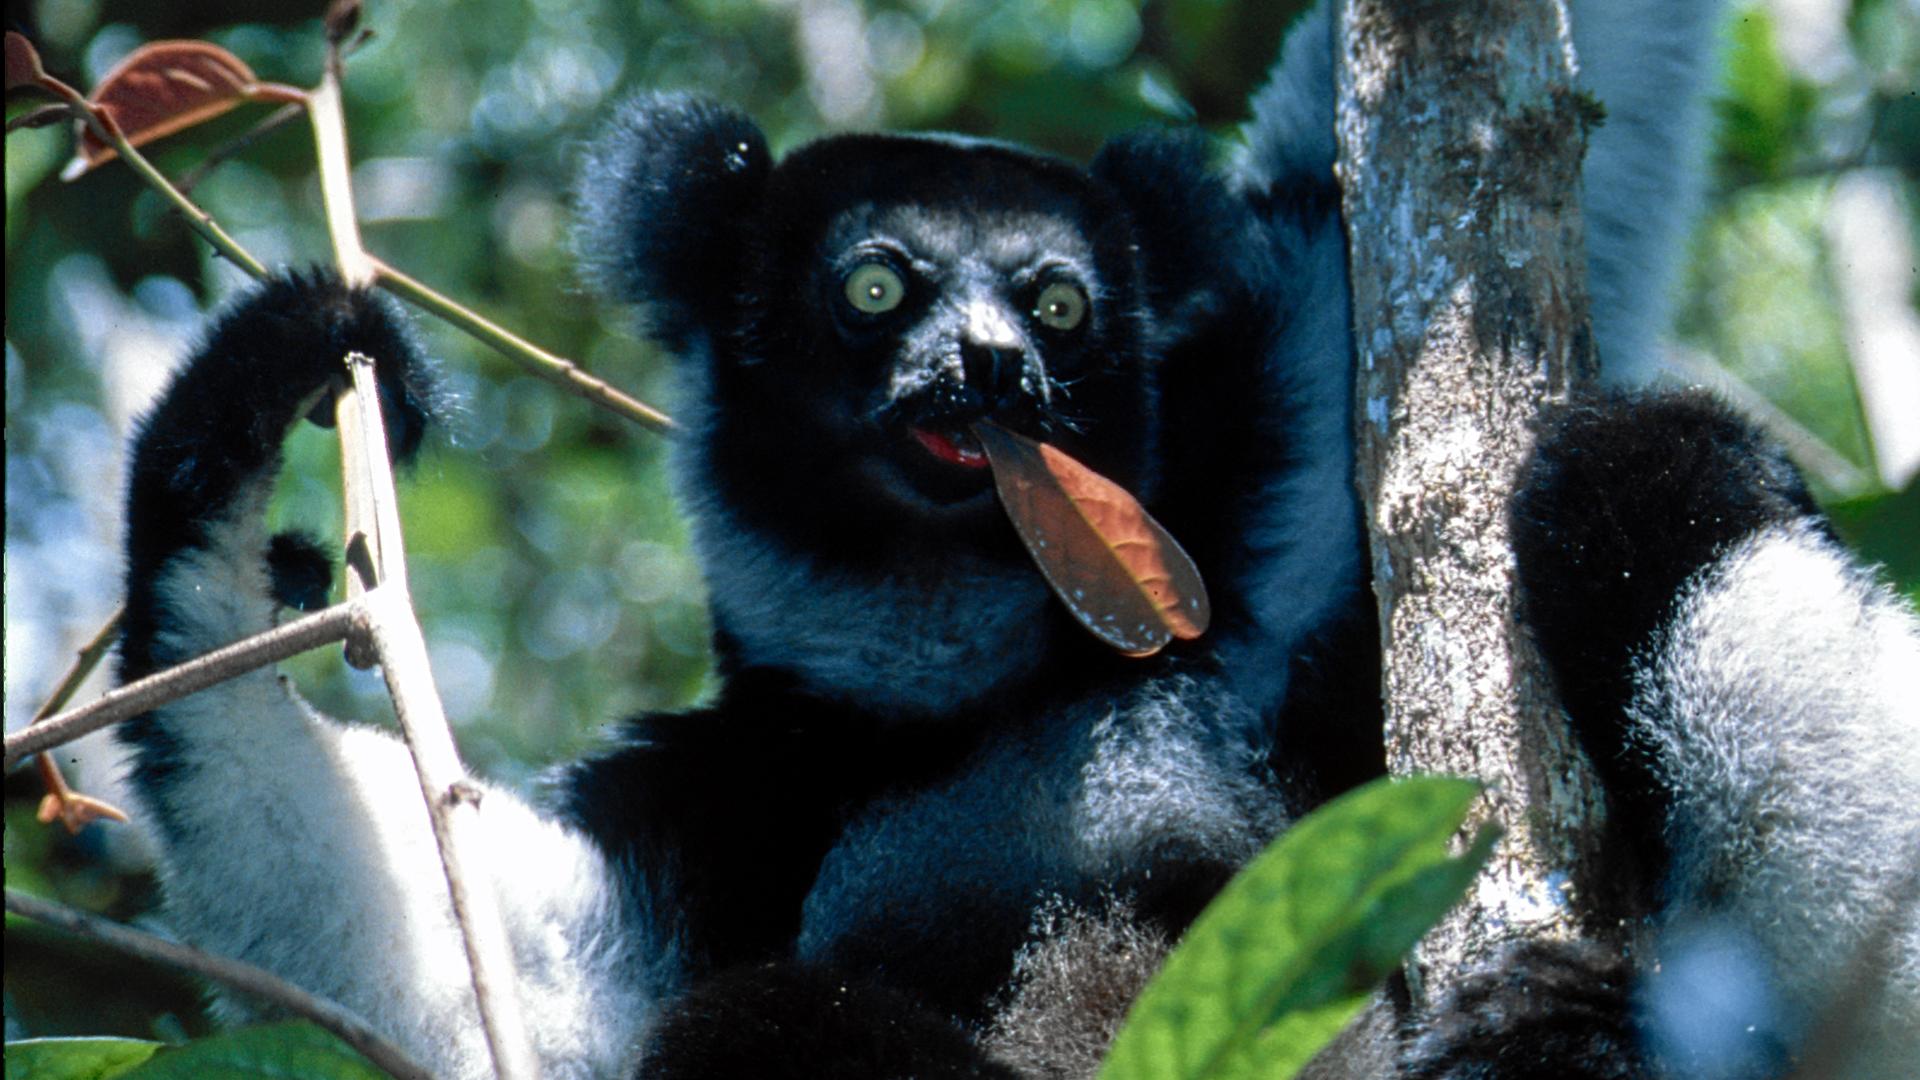 Ein Indri sitzt im Baum und isst Blätter.